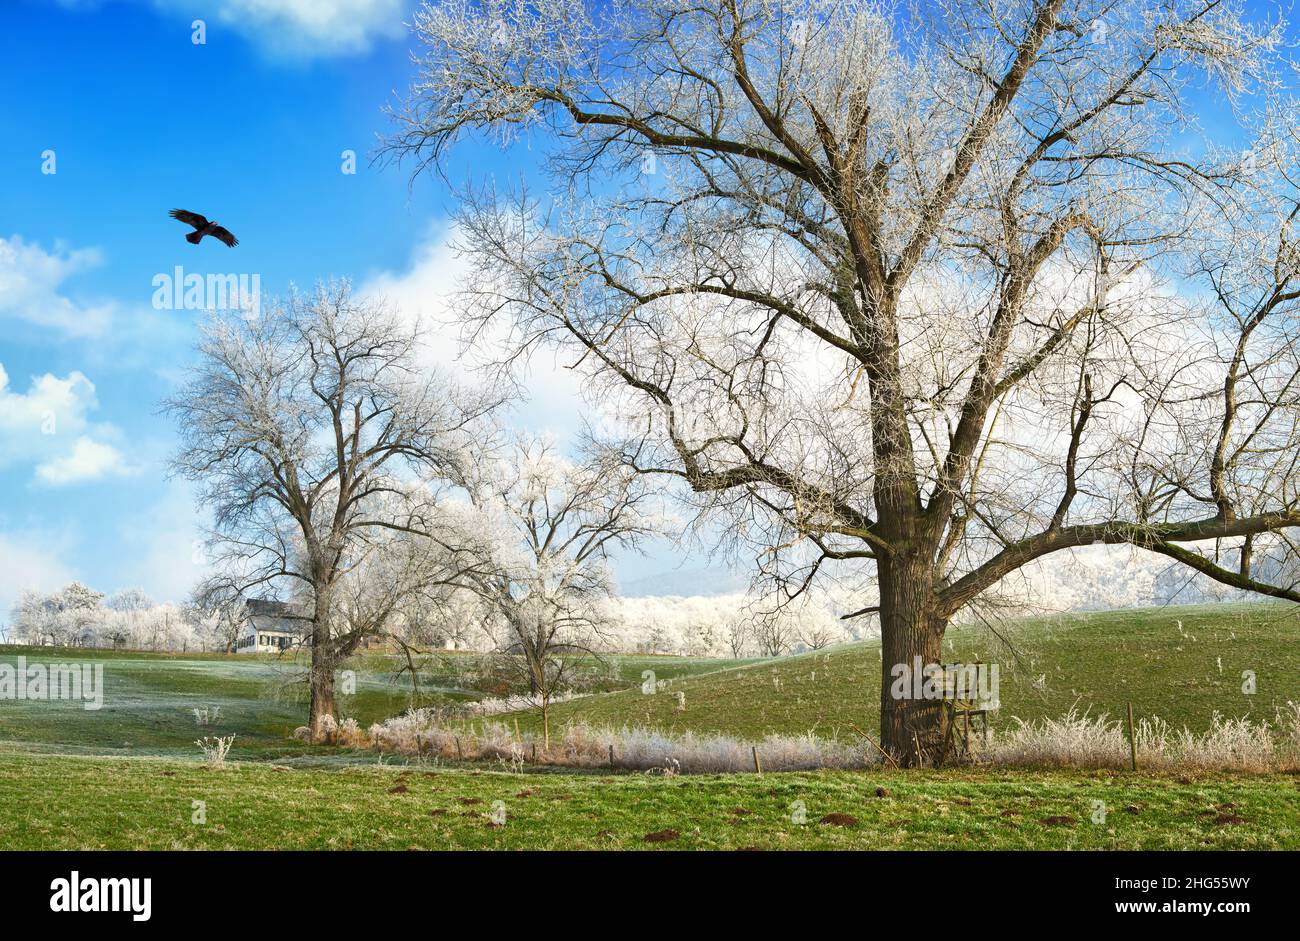 Paysage d'hiver contenant de vieux arbres avec du givre sur un pâturage vert gelé, ciel bleu, nuages blancs et un oiseau volant Banque D'Images